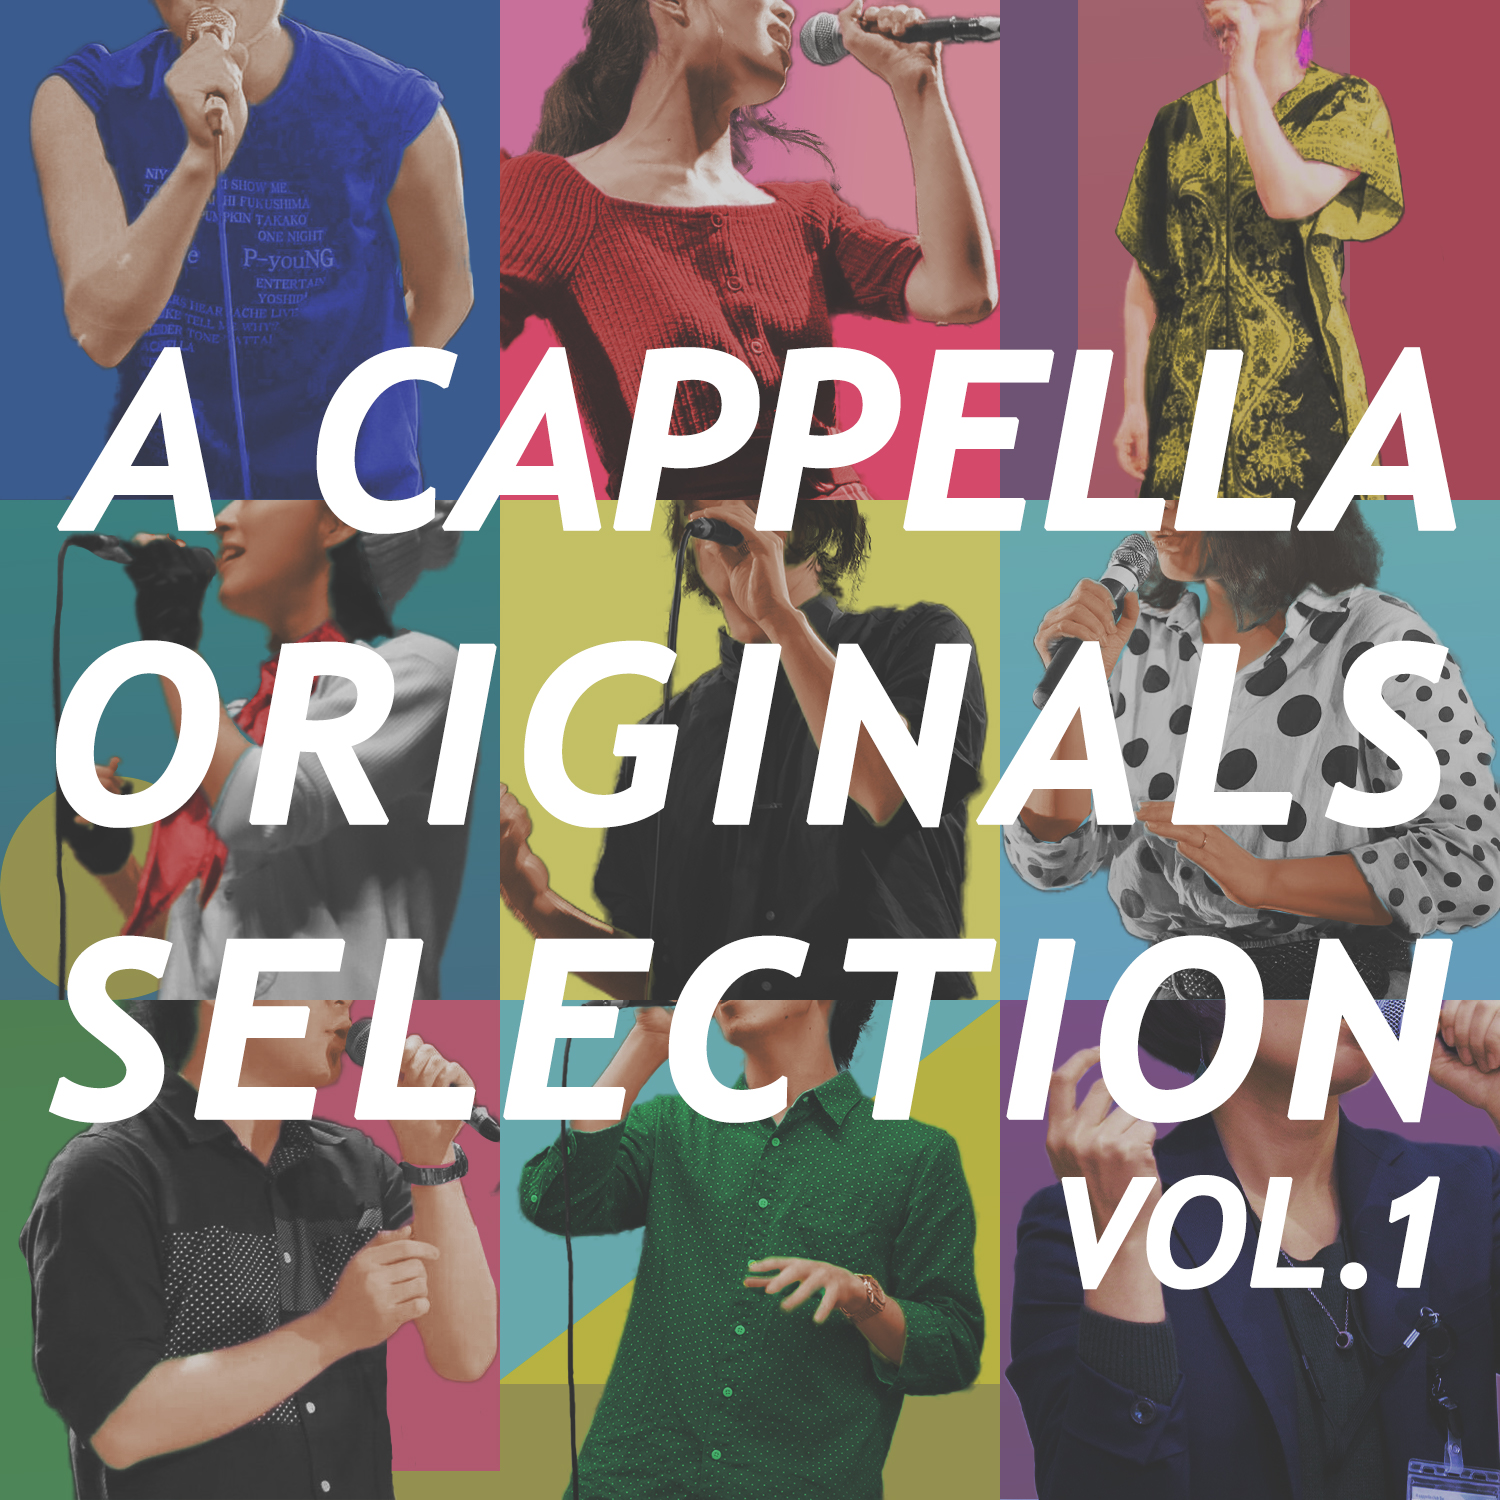 コンピレーションアルバム「A CAPPELLA ORIGINALS SELLECTION vol.1」